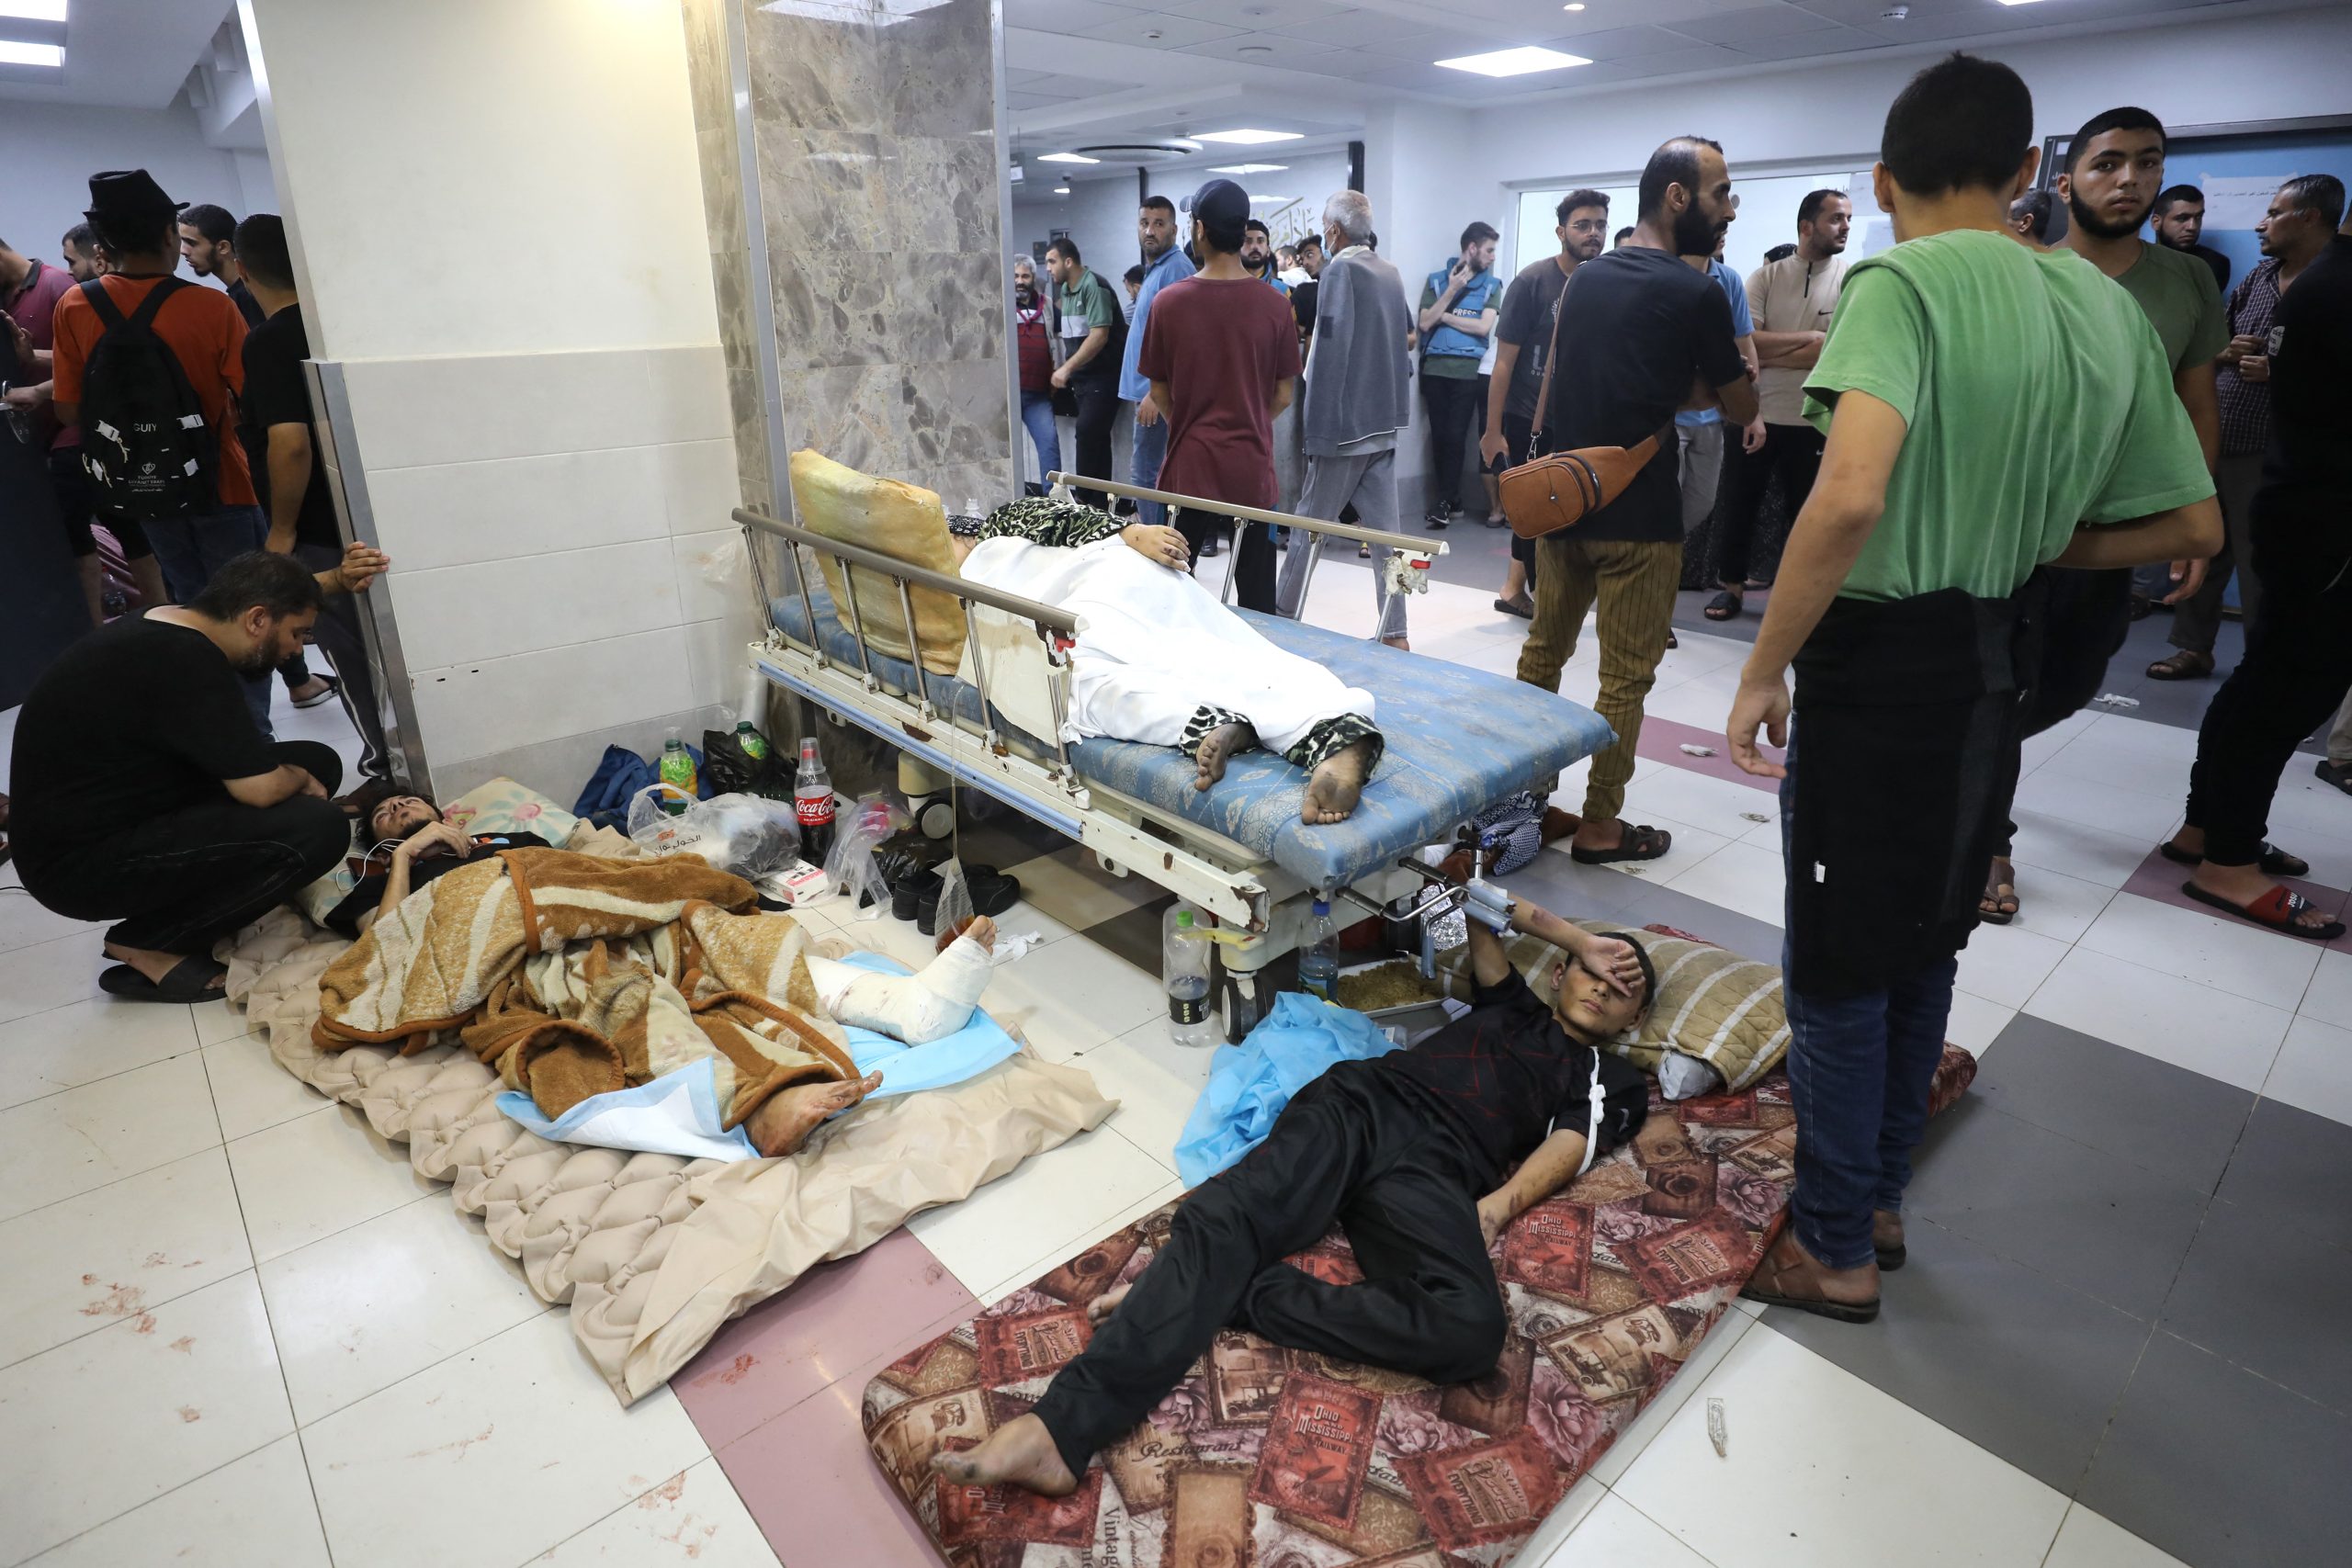 Fóliába tekert újszülöttek és temetetlen holtak százai vannak a gázai kórházakban | G7 – Gazdasági sztorik érthetően